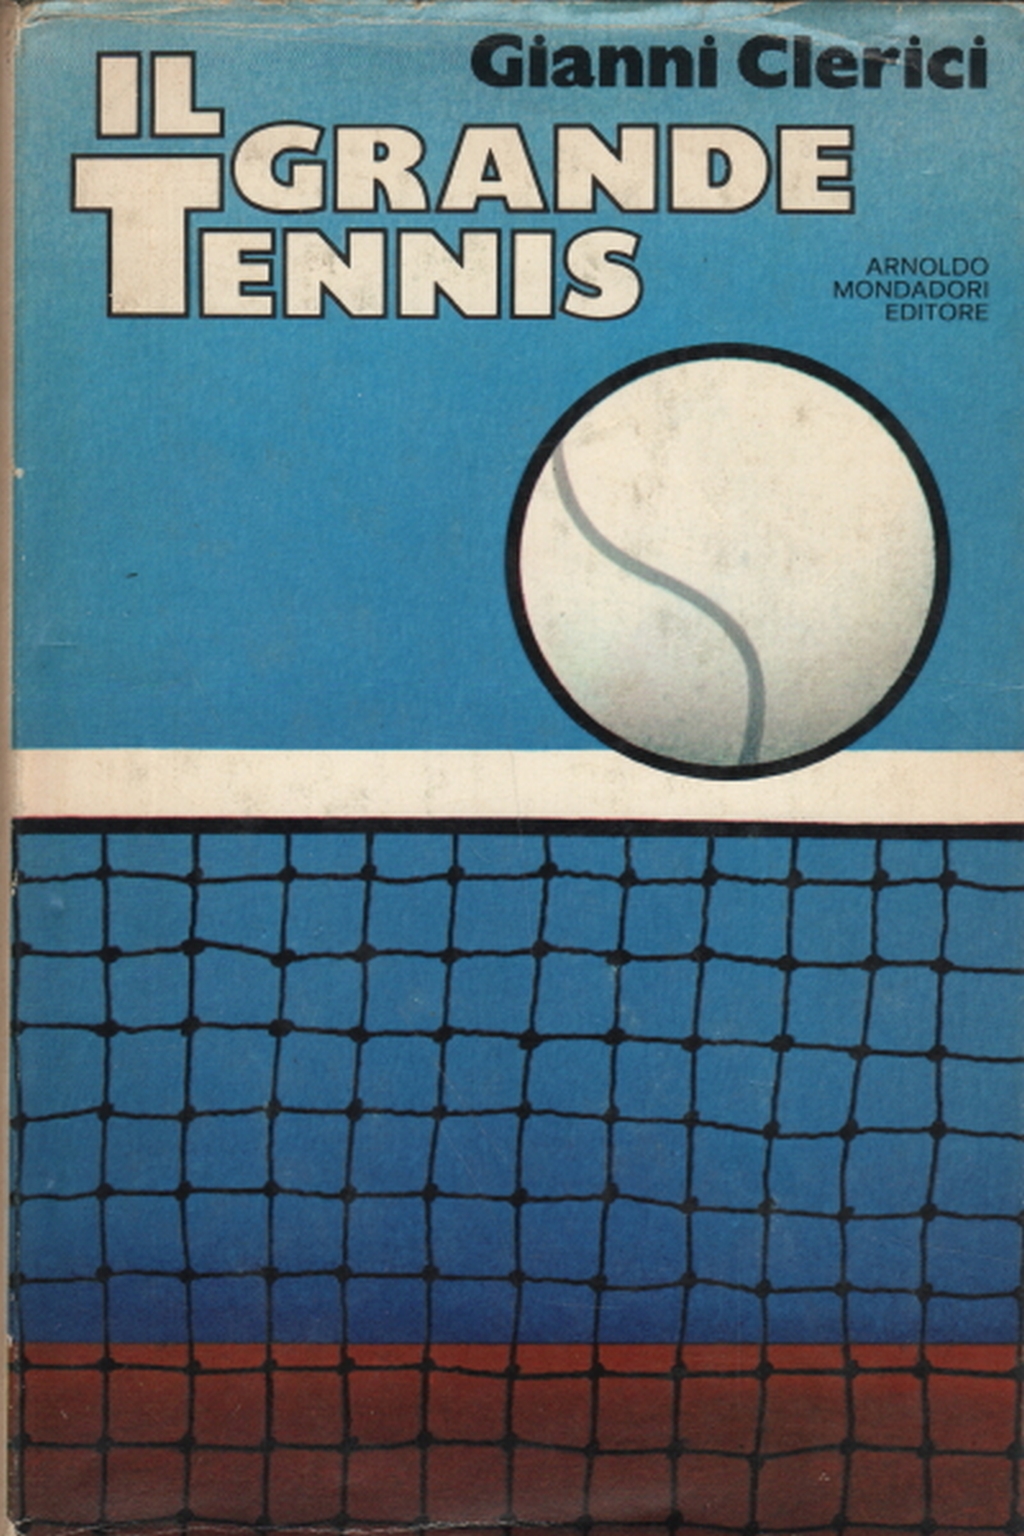 El tenis, Gianni Clerici